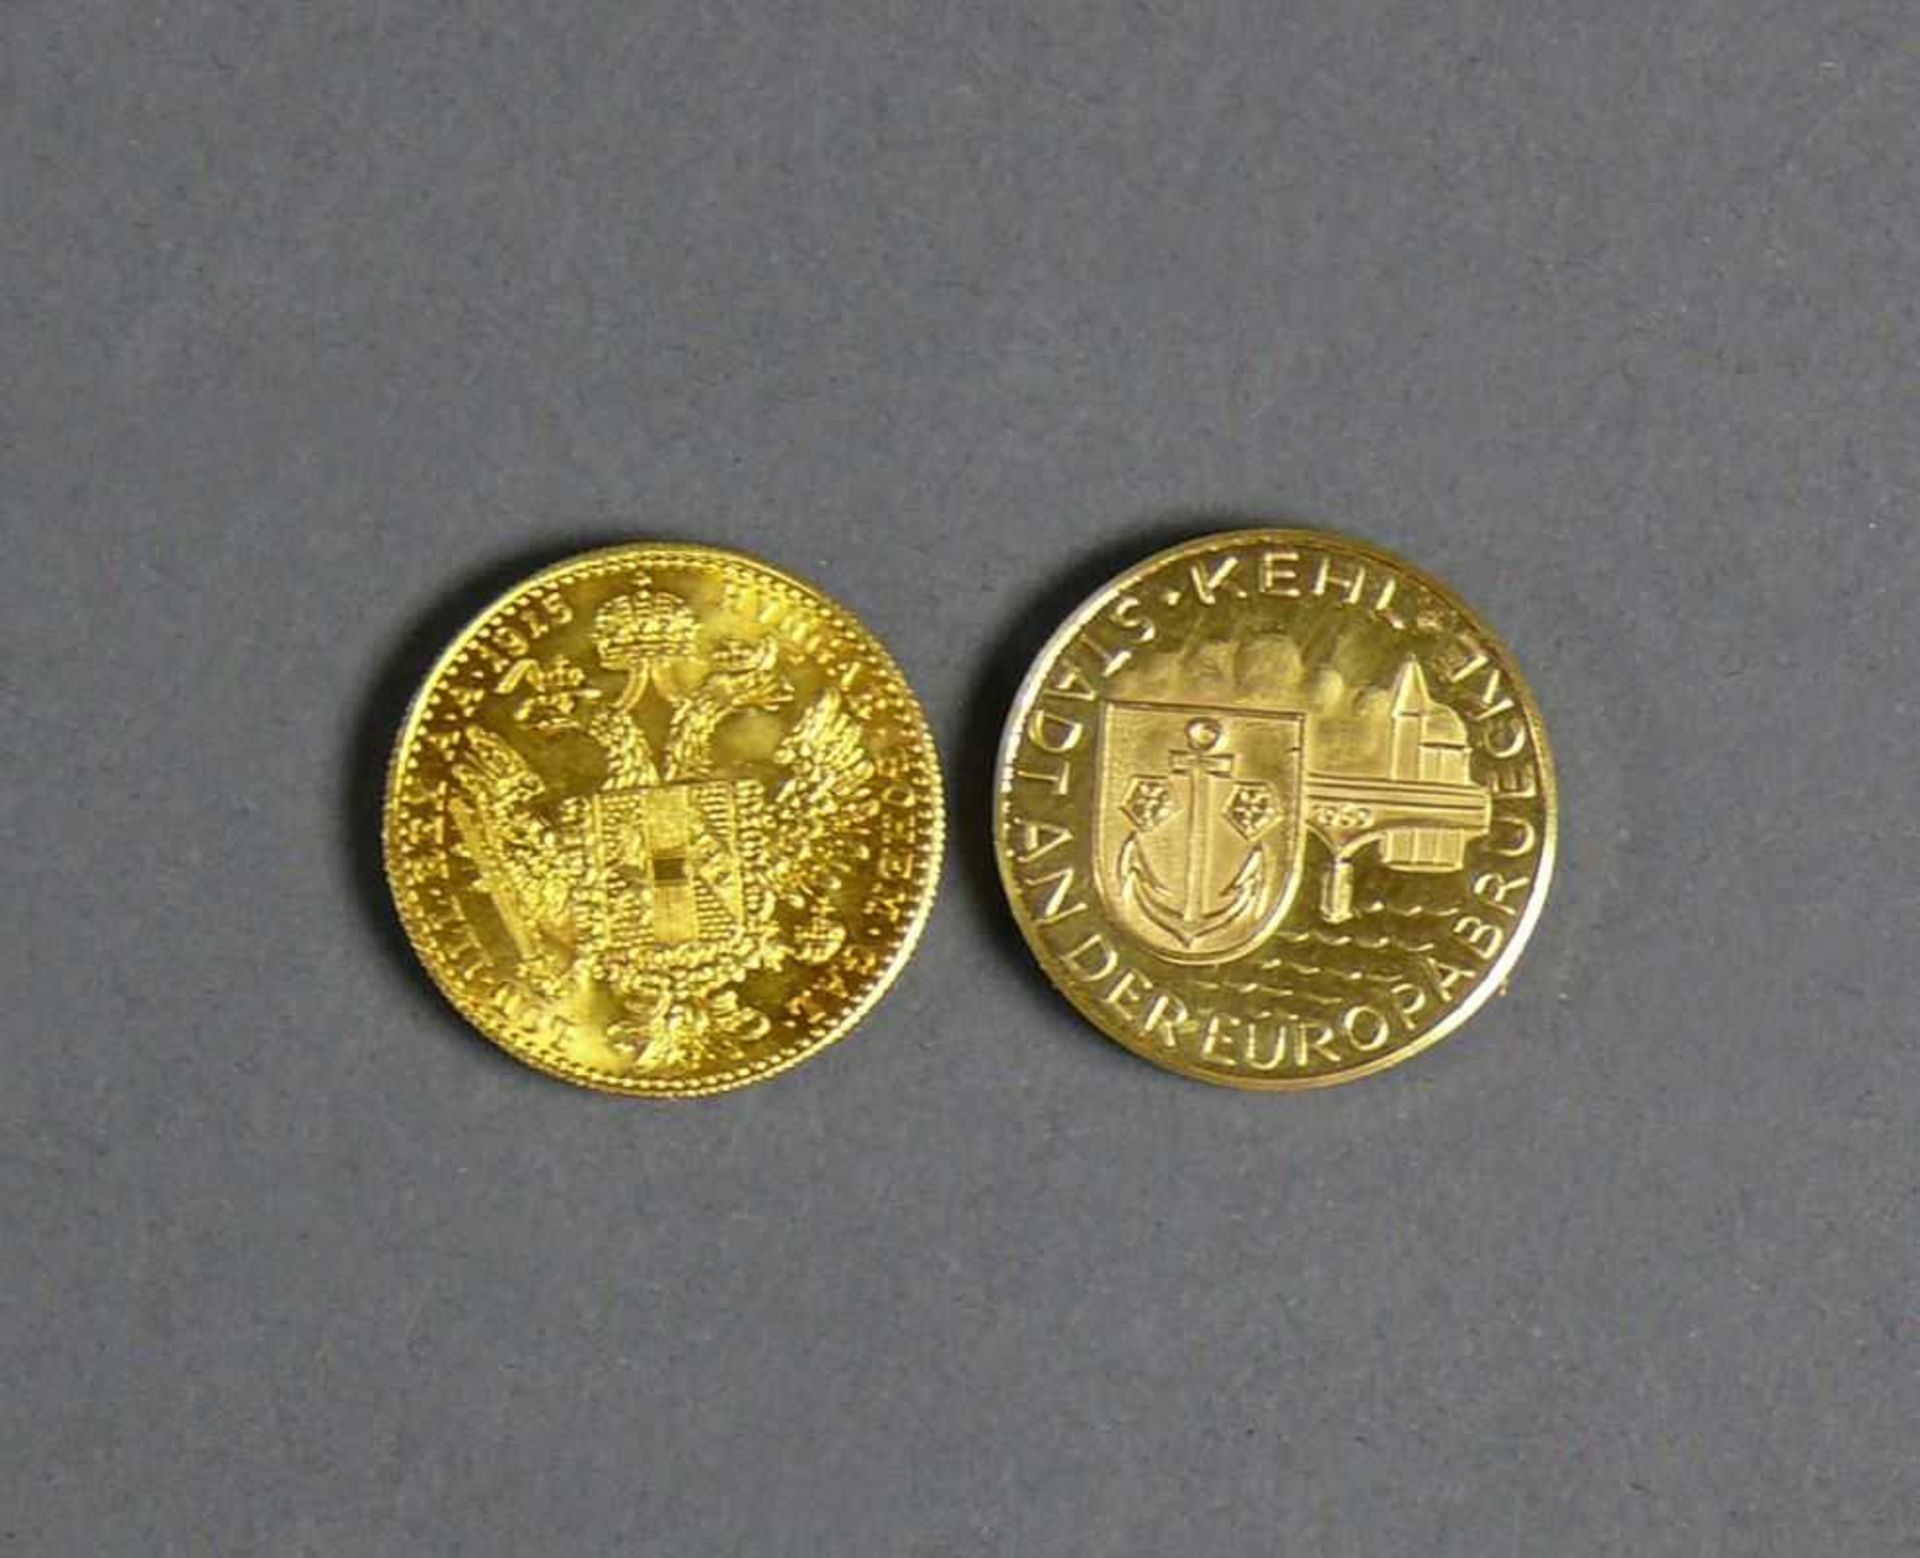 Goldmünze und Medaille Franz Josef I; Österreich/Ungarn 1915; D: 2 cm und Medaille (Kehl Stadt an